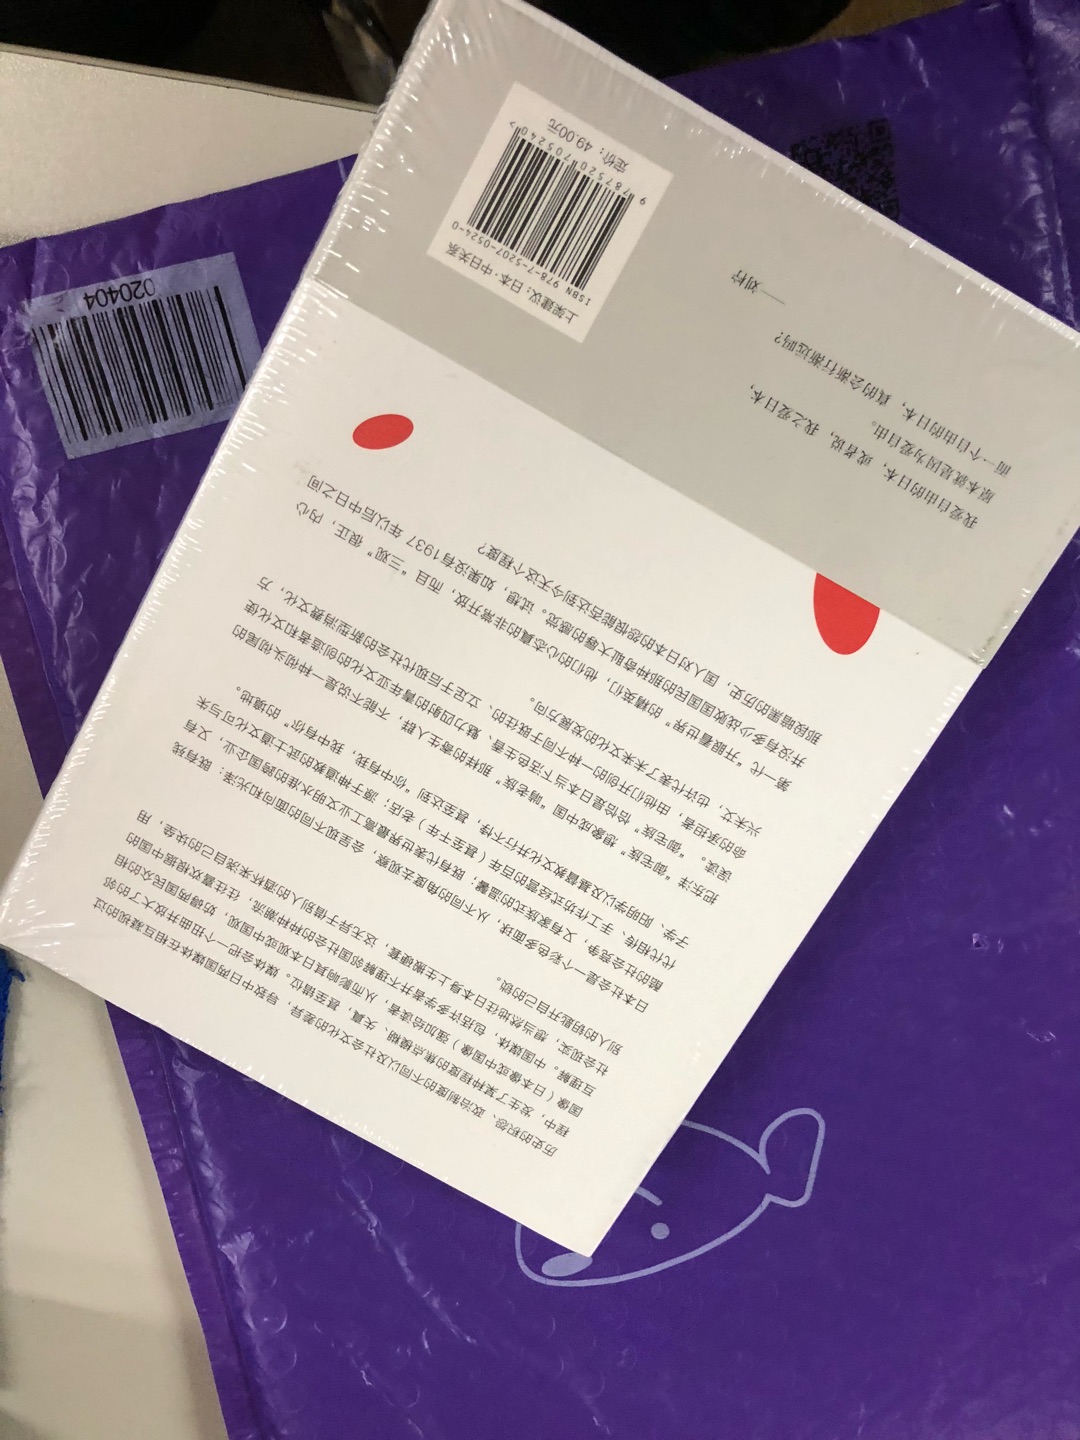 一直喜欢关于日本的一切 这本书从另一种角度解读 希望那些动不动就打倒就抵制的粉红们也学习学习 师夷长技